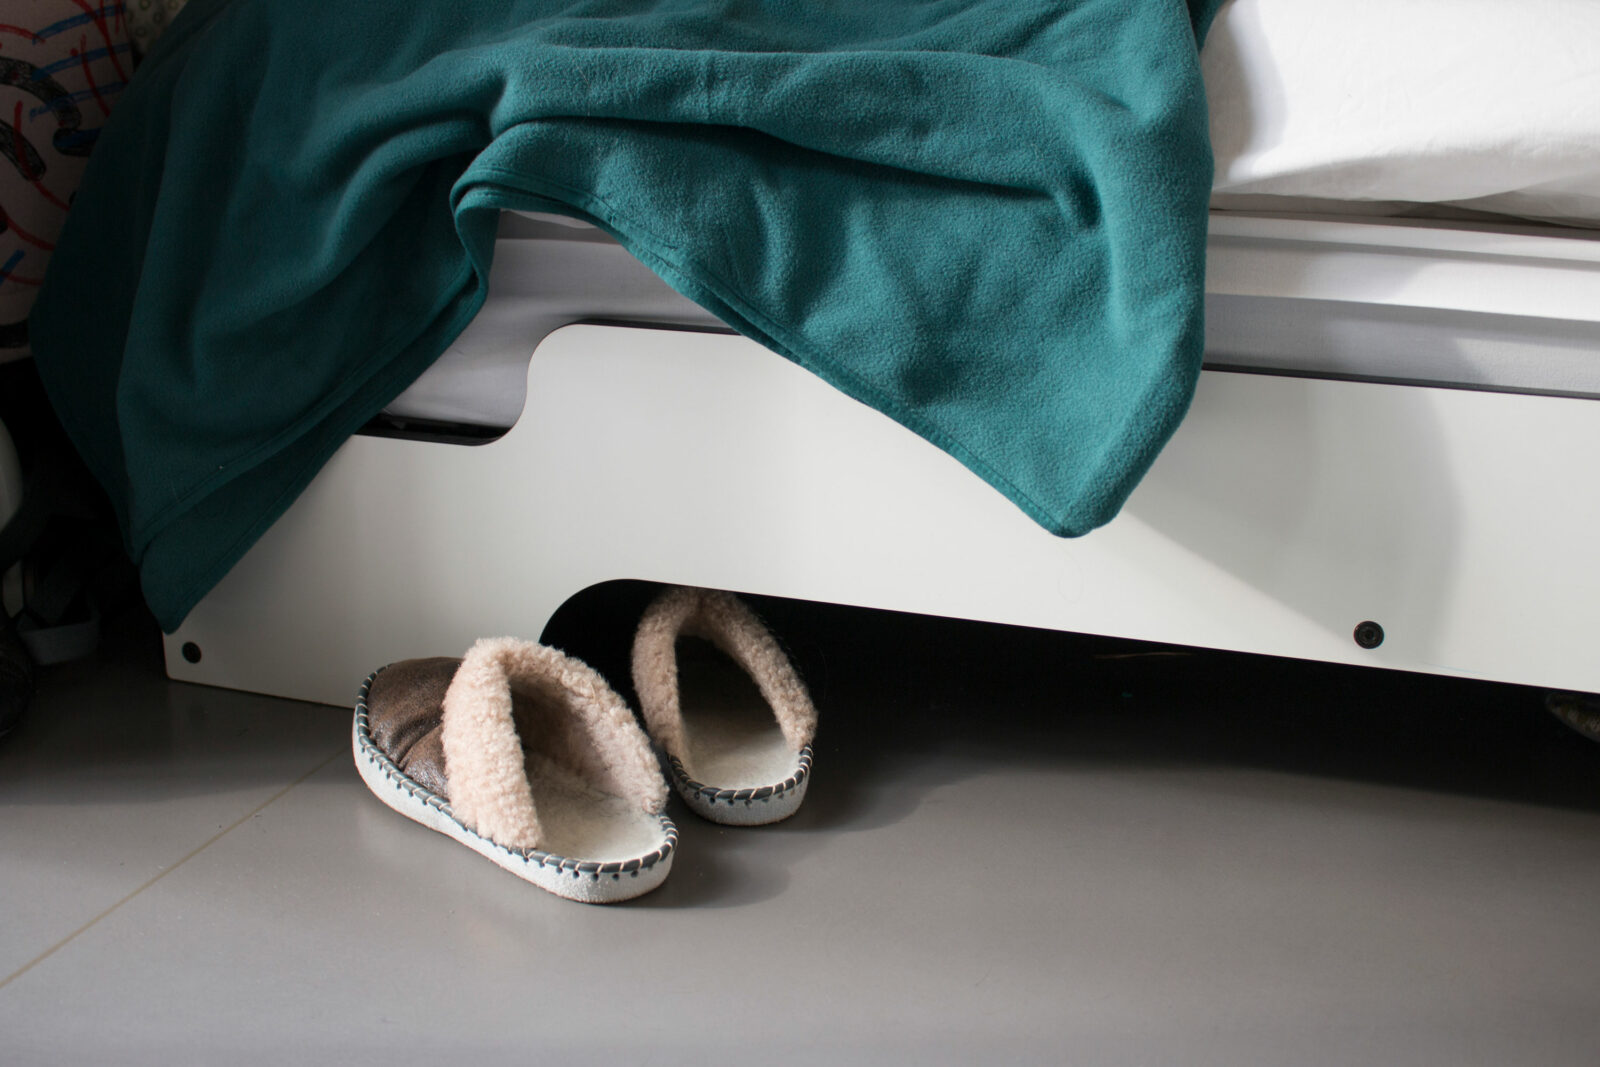 Detailaufnahme von zwei Pantoffeln, die vor einem Bett stehen. Eine türkise Zudecke hängt aus dem Bett heraus.